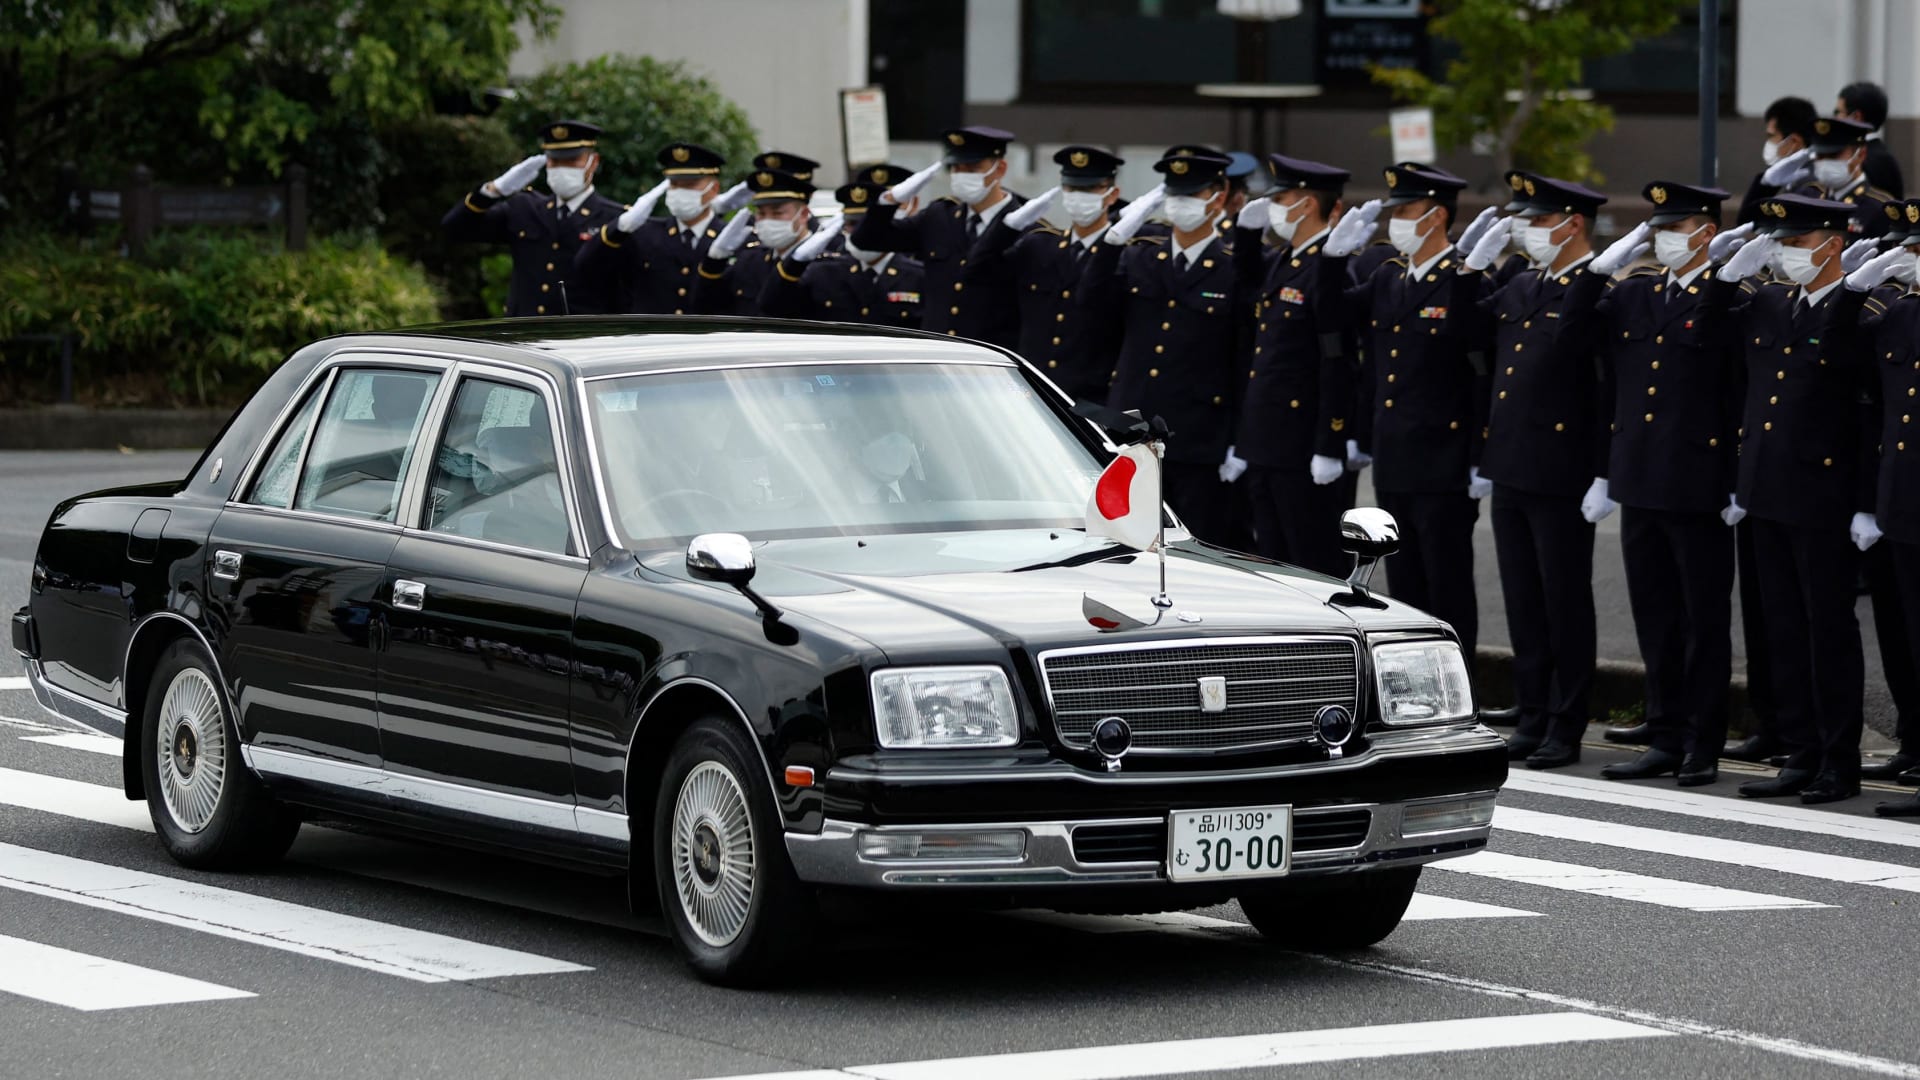 من زاوية أخرى.. شاهد لحظة اغتيال رئيس الوزراء الياباني السابق شينزو آبي